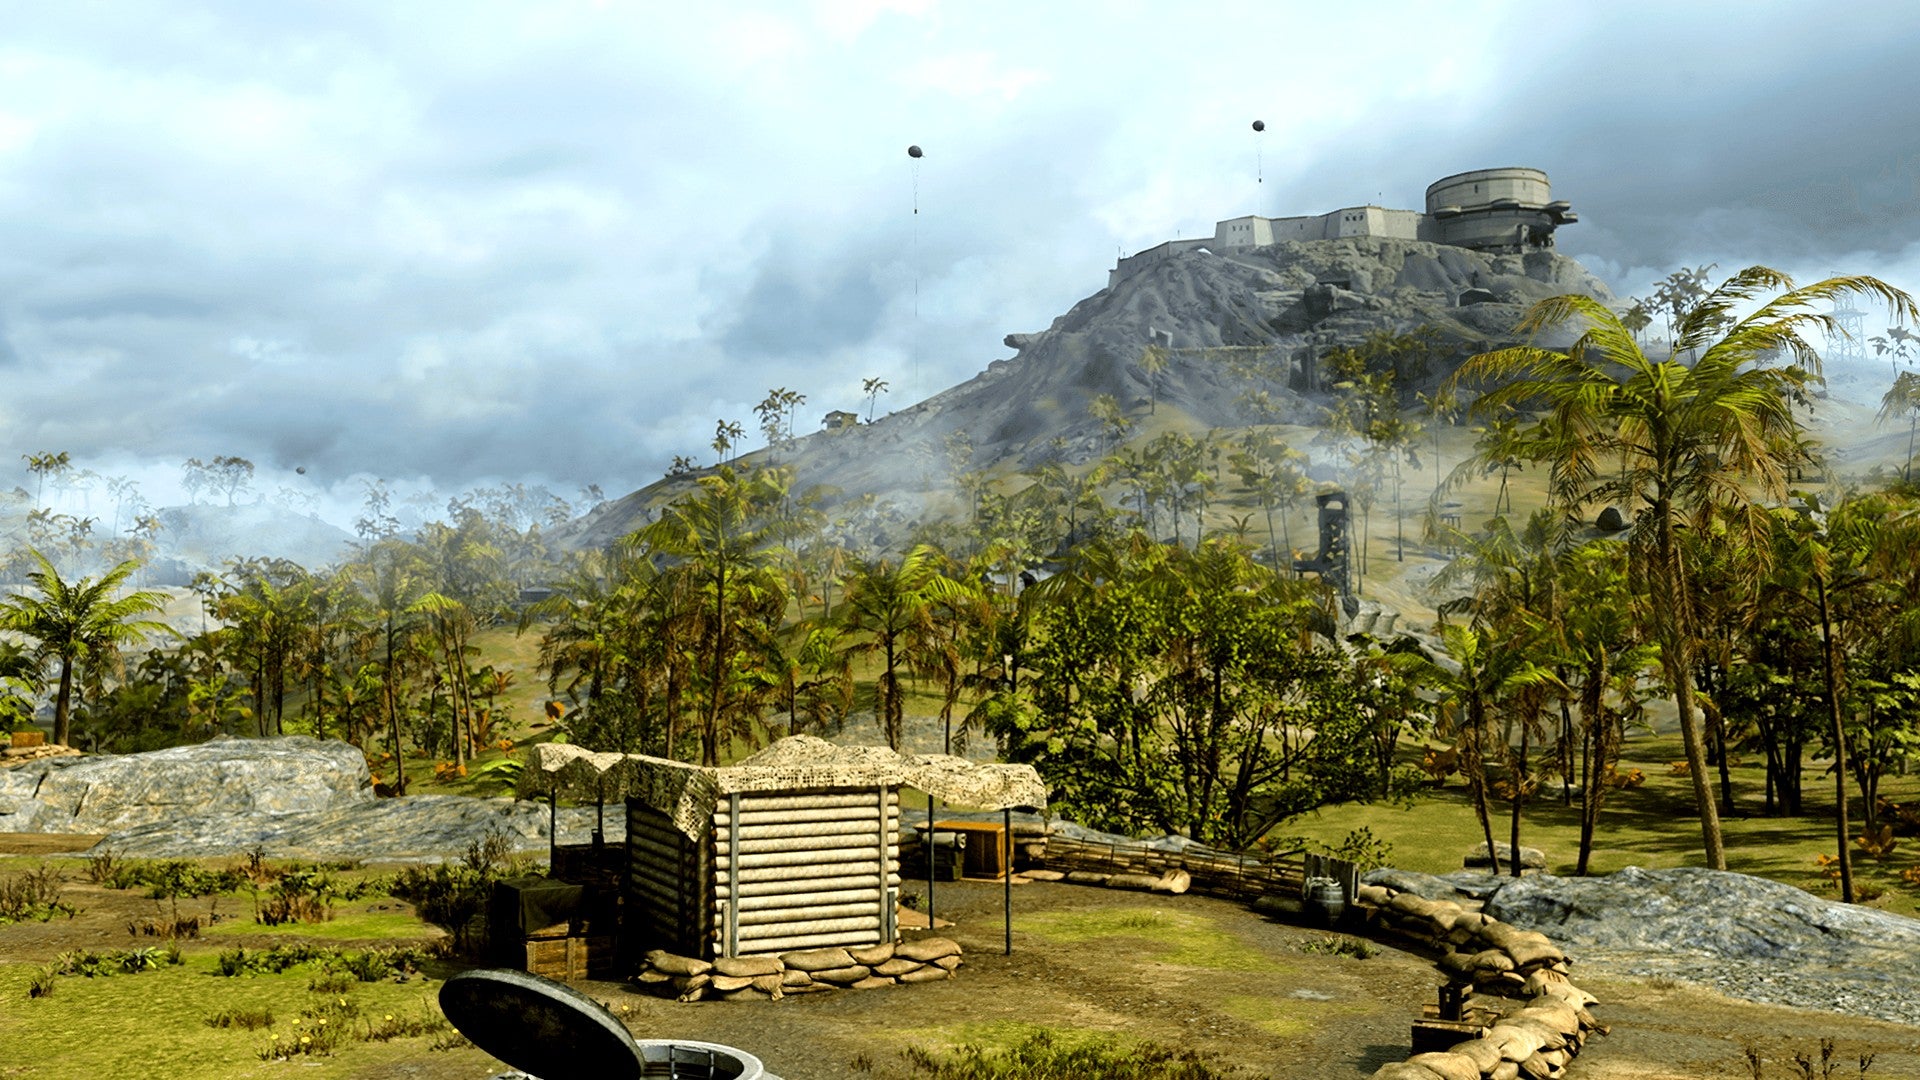 Bilder zu Call of Duty verliert massenhaft User innerhalb eines Jahres